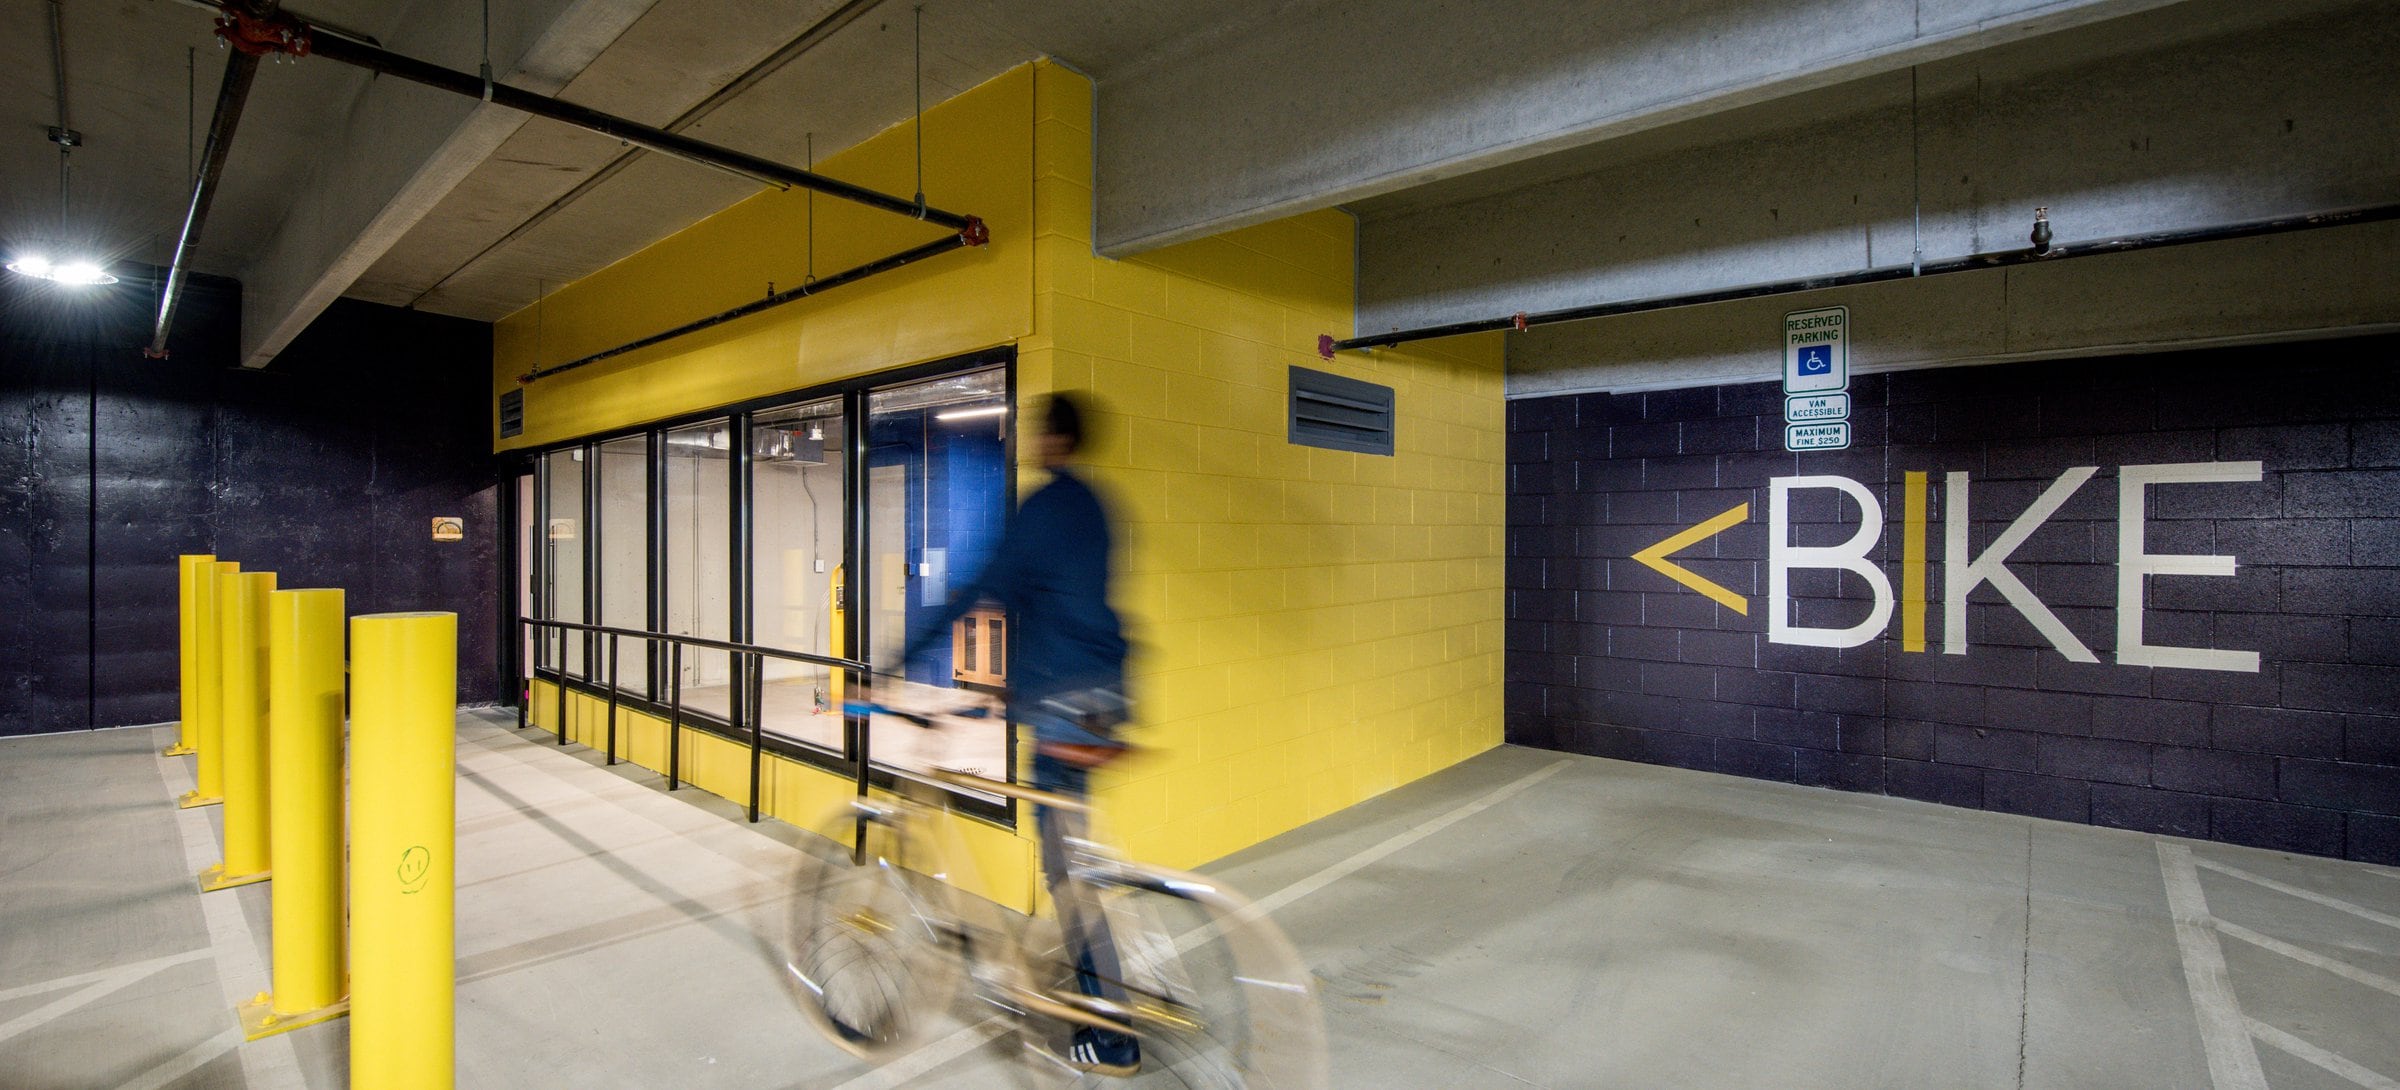 Parking garage with bike repair room